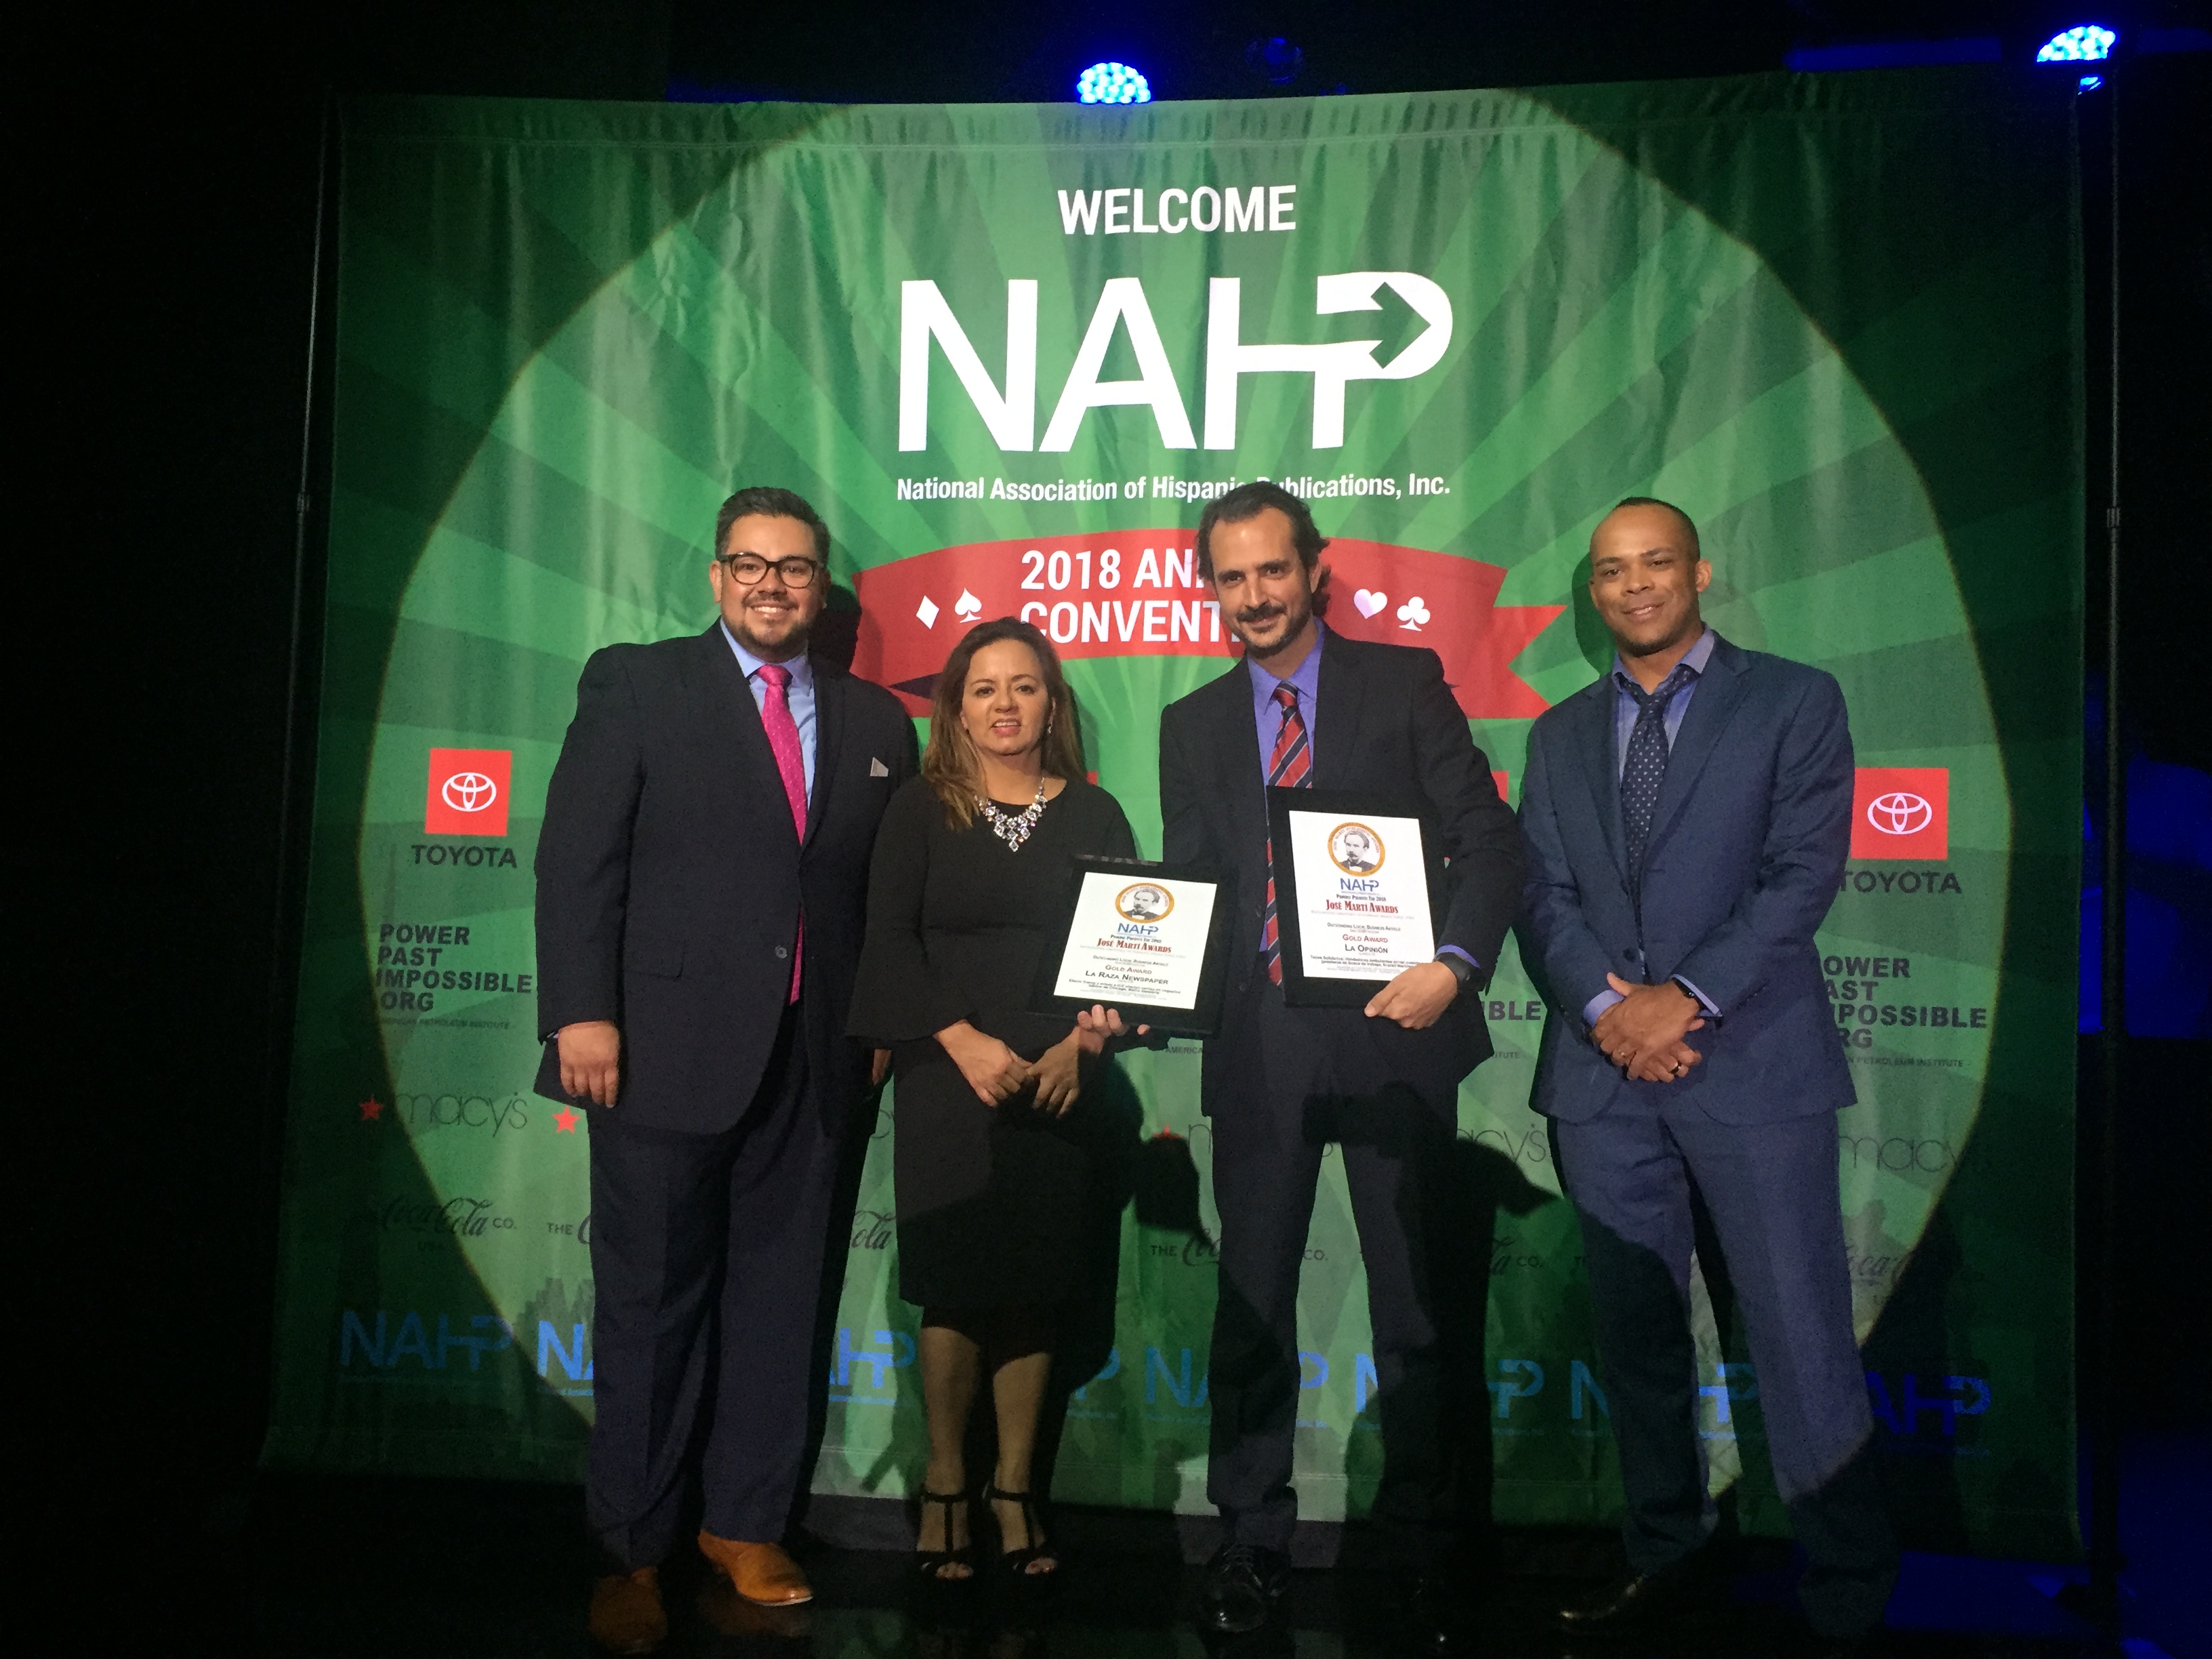 Rafael Cores, vicepresidente de Contenido de Impremedia, recogió los premios de la mano de Fanny Miller, presidenta de la NAHP. / Foto: Impremedia